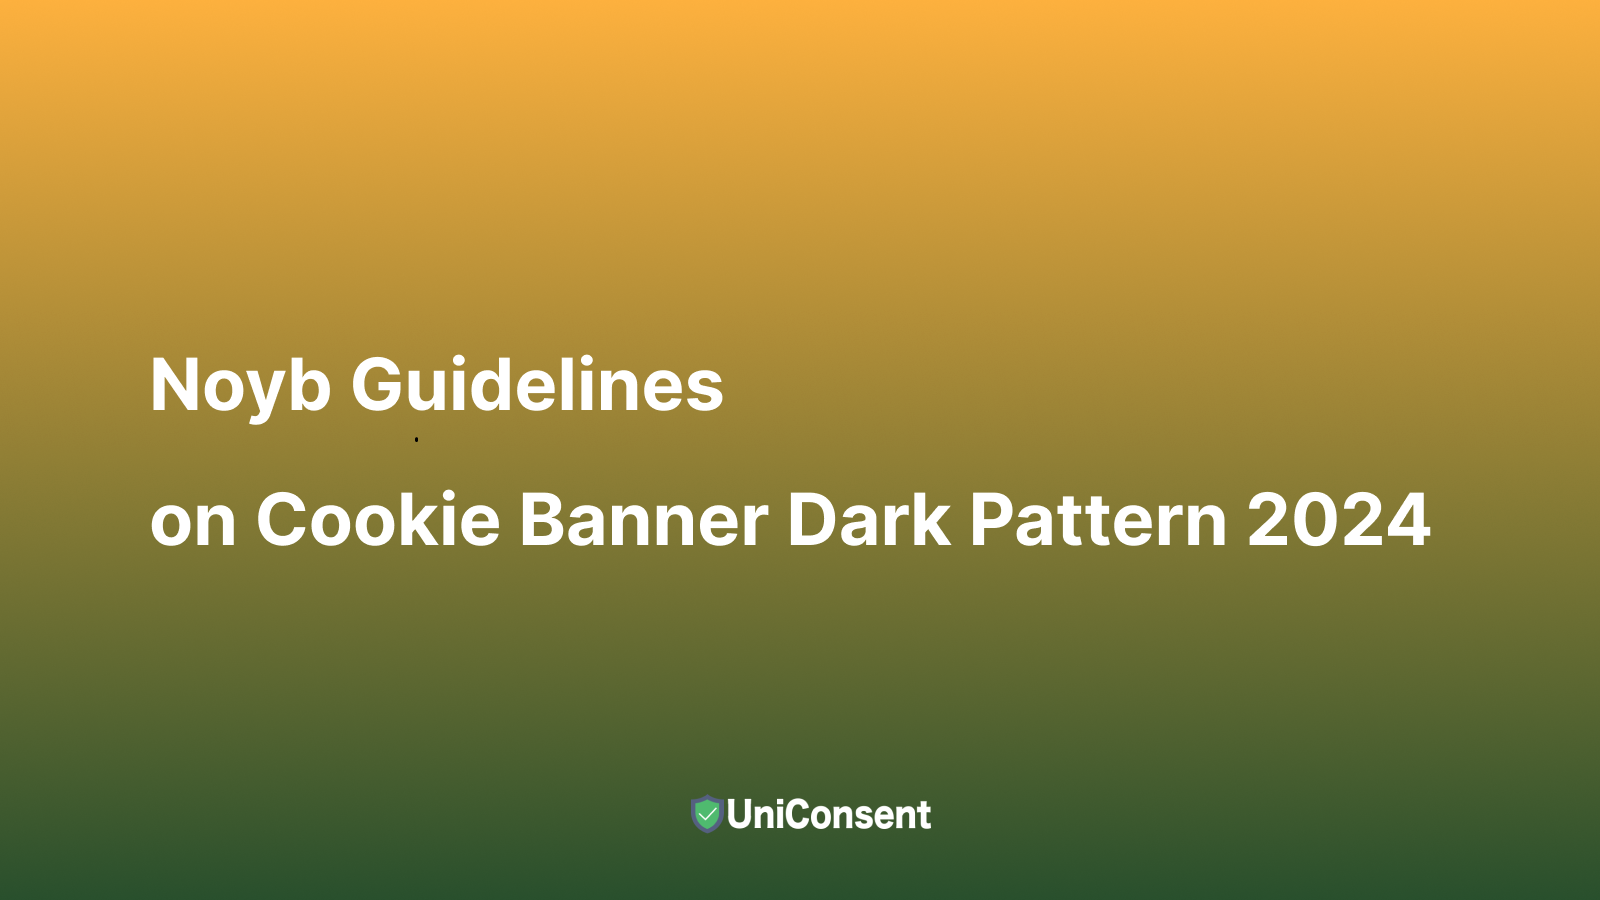 Lignes directrices de Noyb sur le motif sombre de la bannière de cookies 2024